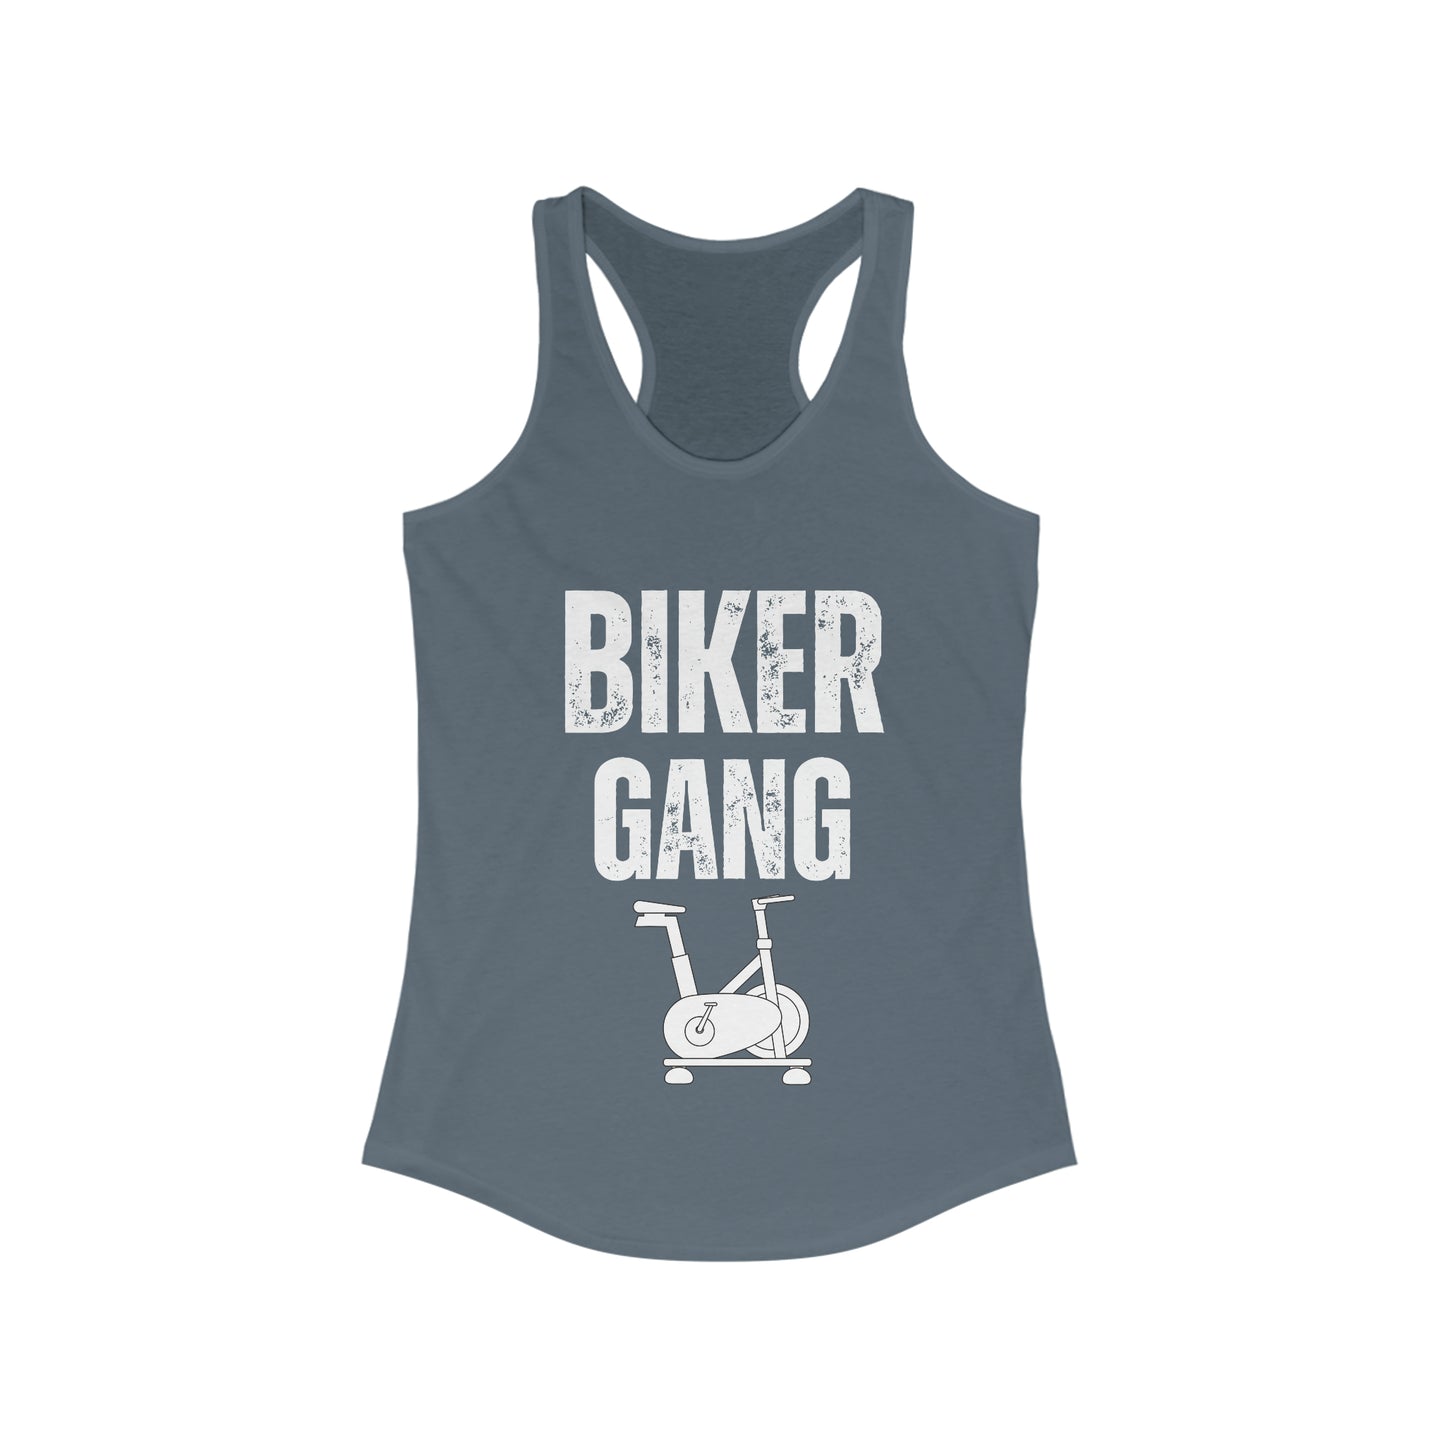 Biker Gang shirt